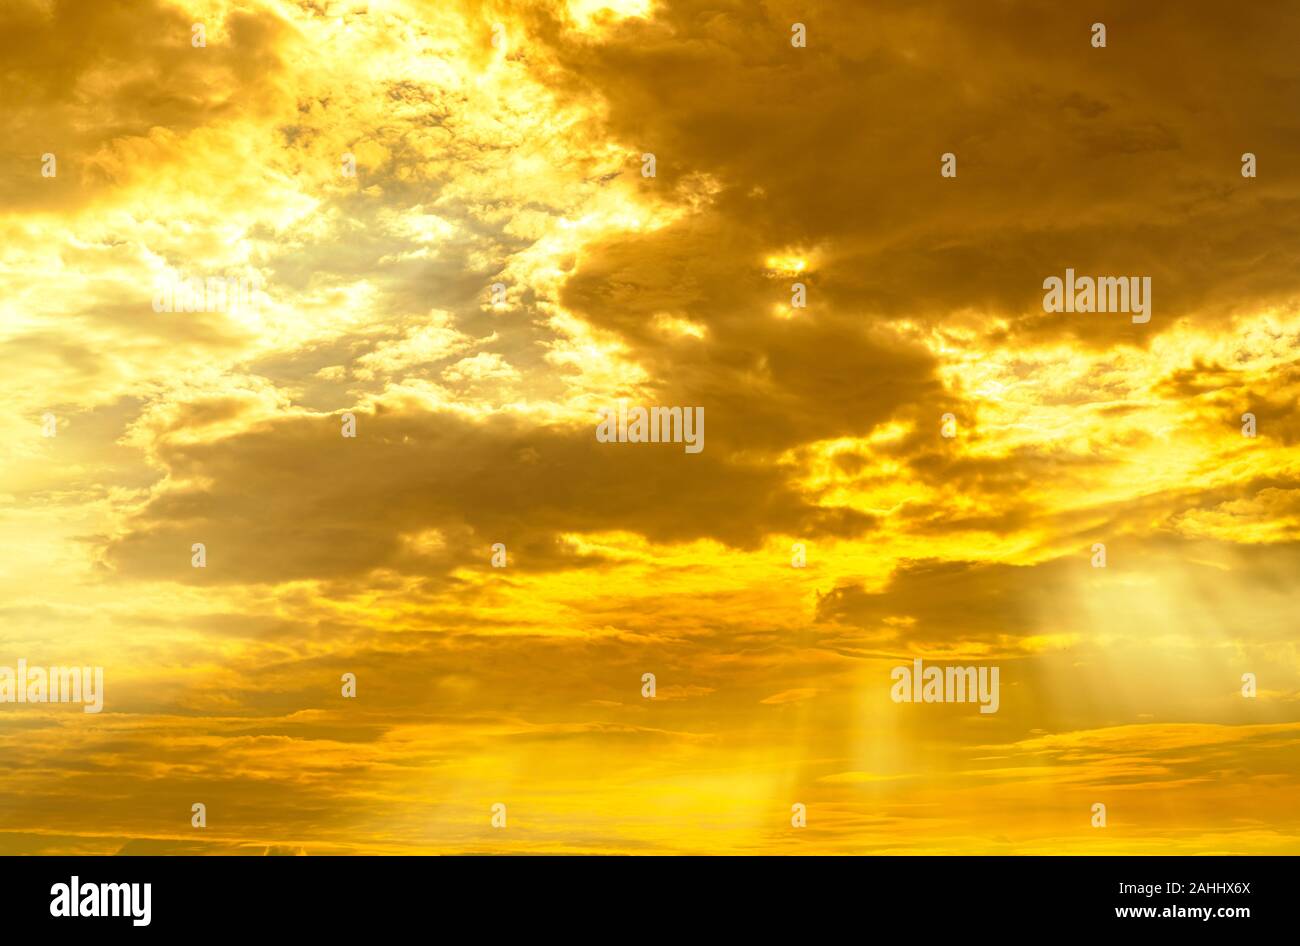 La lumière de Dieu. Or dramatique ciel nuageux avec sun beam. Soleil jaune rayons à travers les nuages d'or. La lumière de Dieu du ciel pour l'espoir et fidèles concept. Banque D'Images